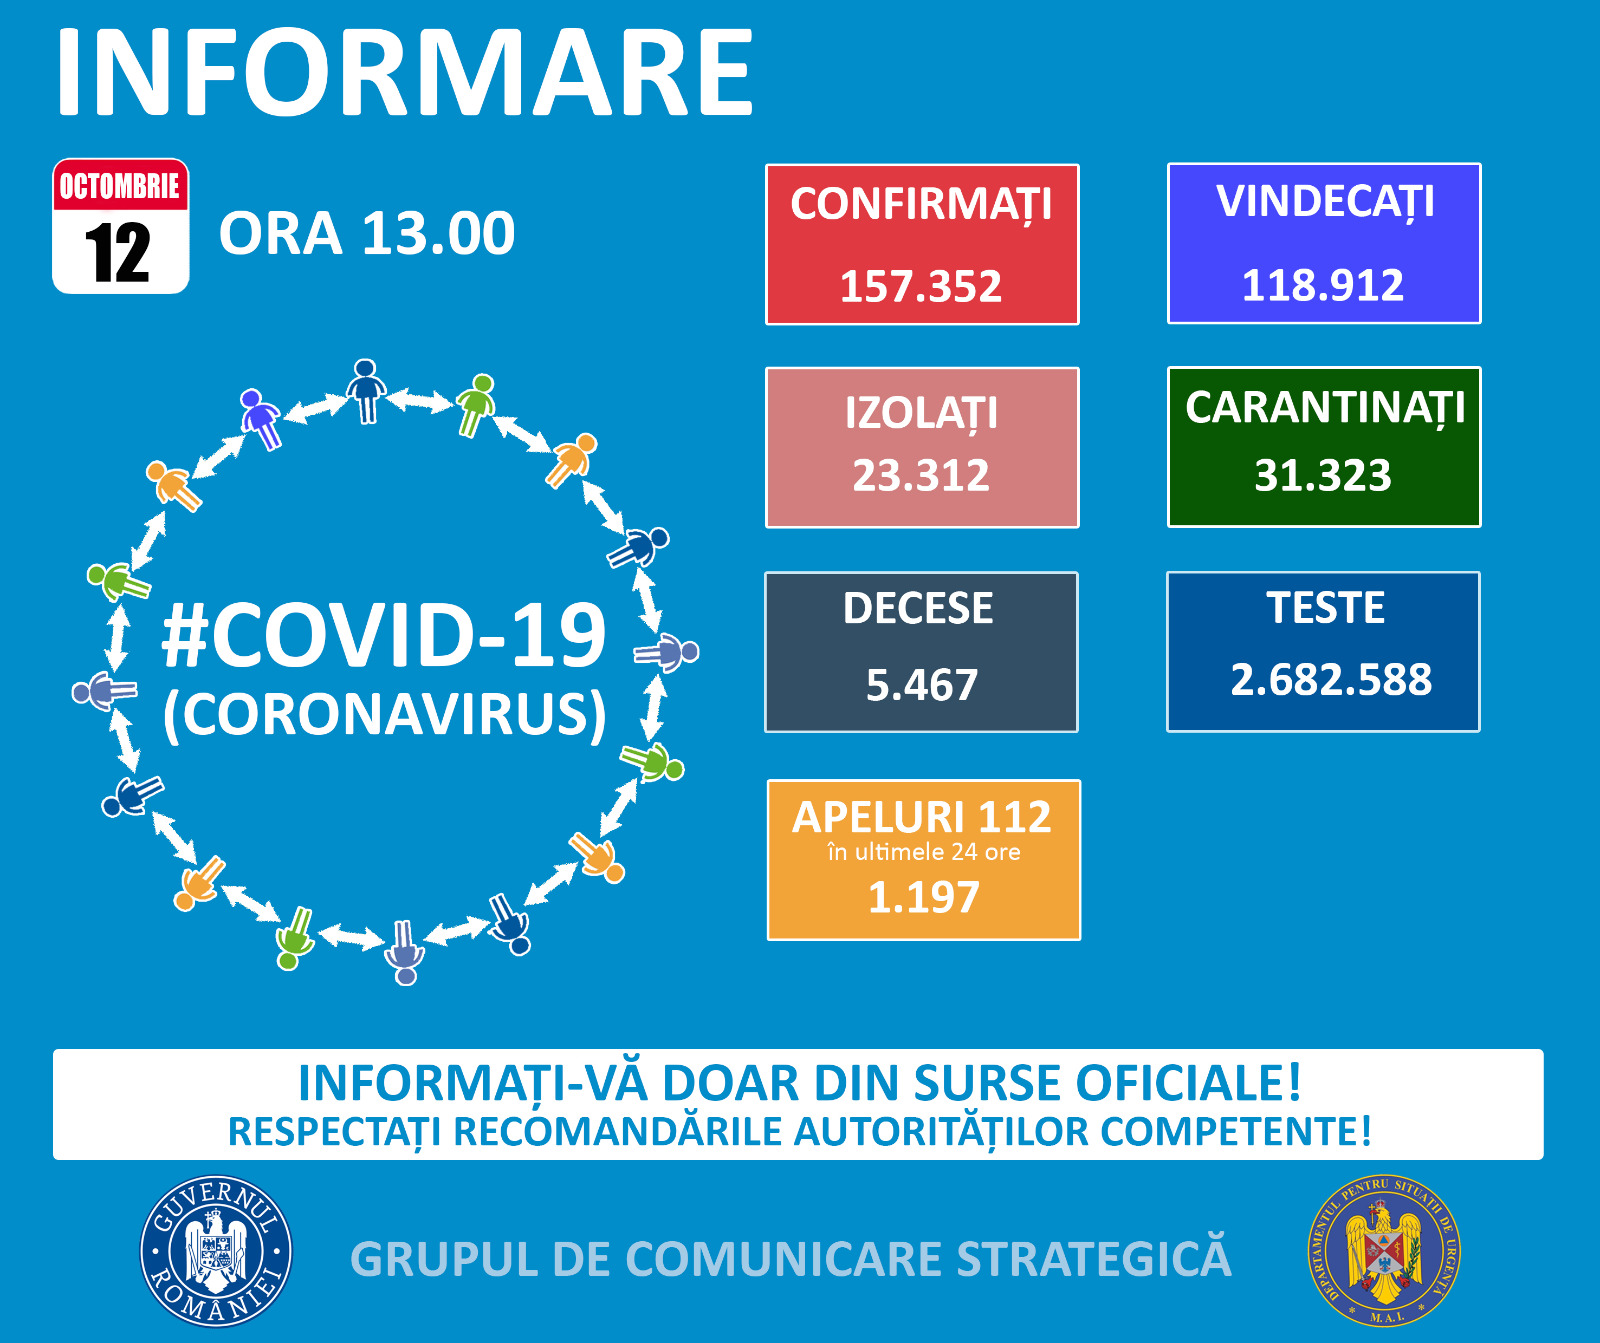 Inca 2.069 de noi cazuri de Covid 19 duc totalul la peste 157.000, dintre care aproape 23.000 in Bucuresti. La ATI, sunt internati 628 de pacienti